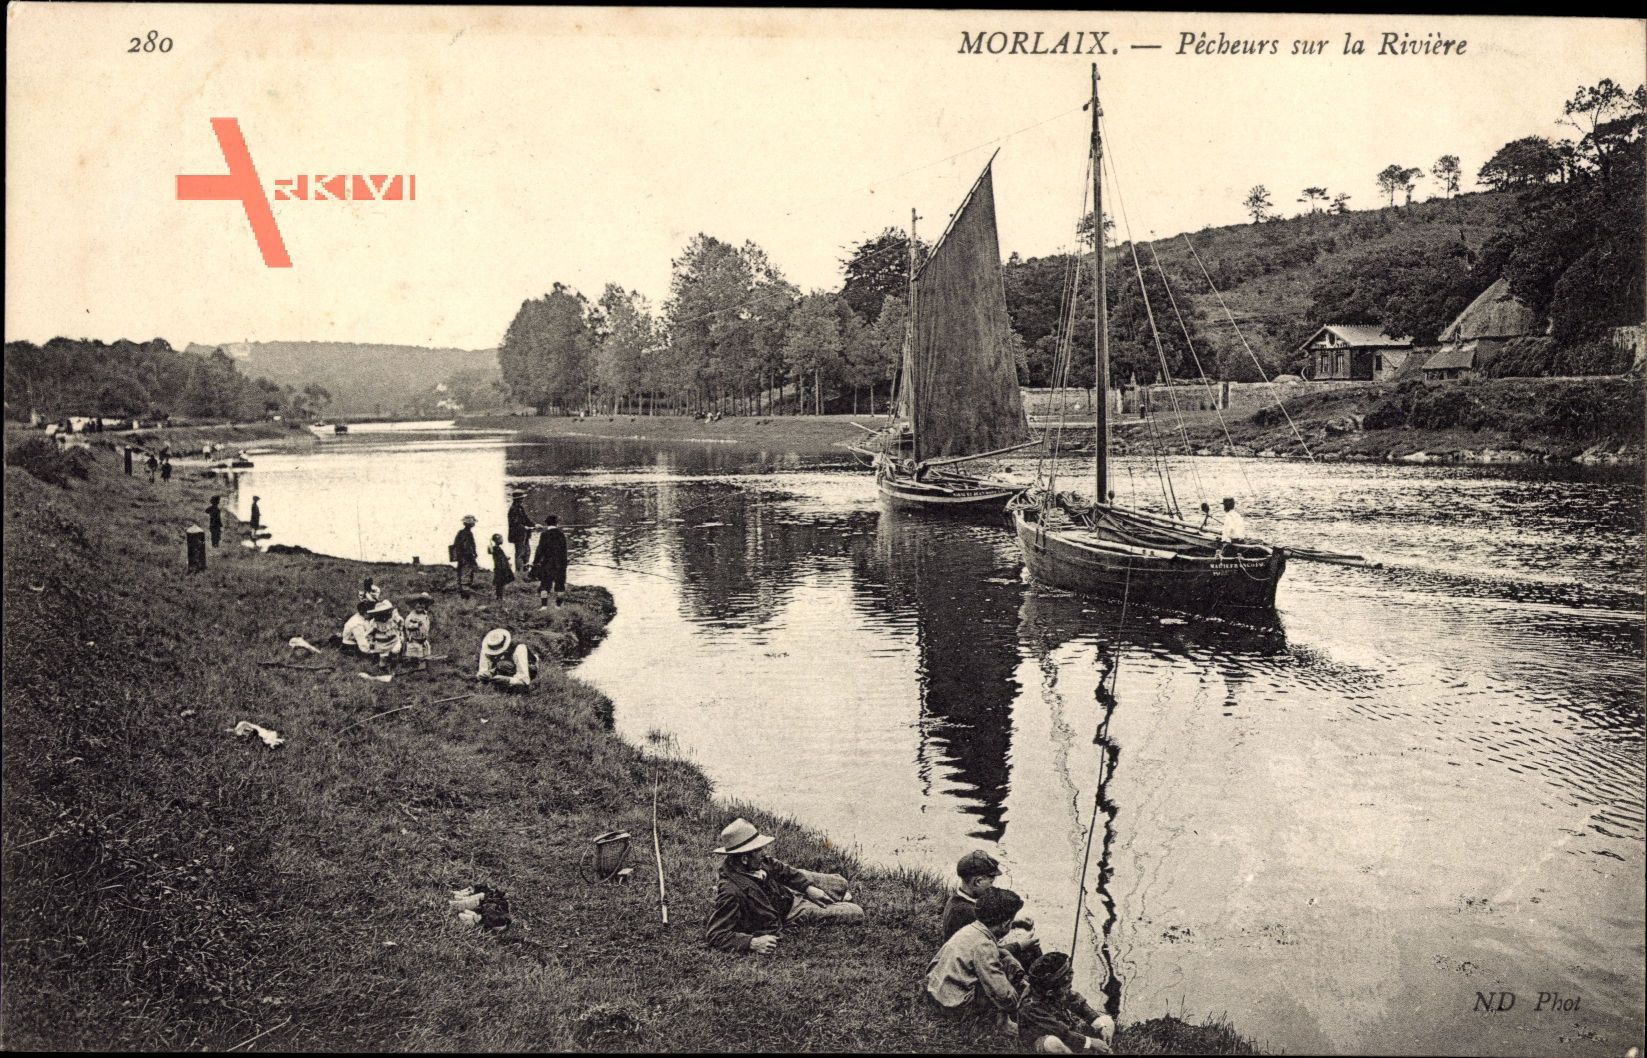 Morlaix Finistère, Pêcheurs sur la Rivière, Flusspartie